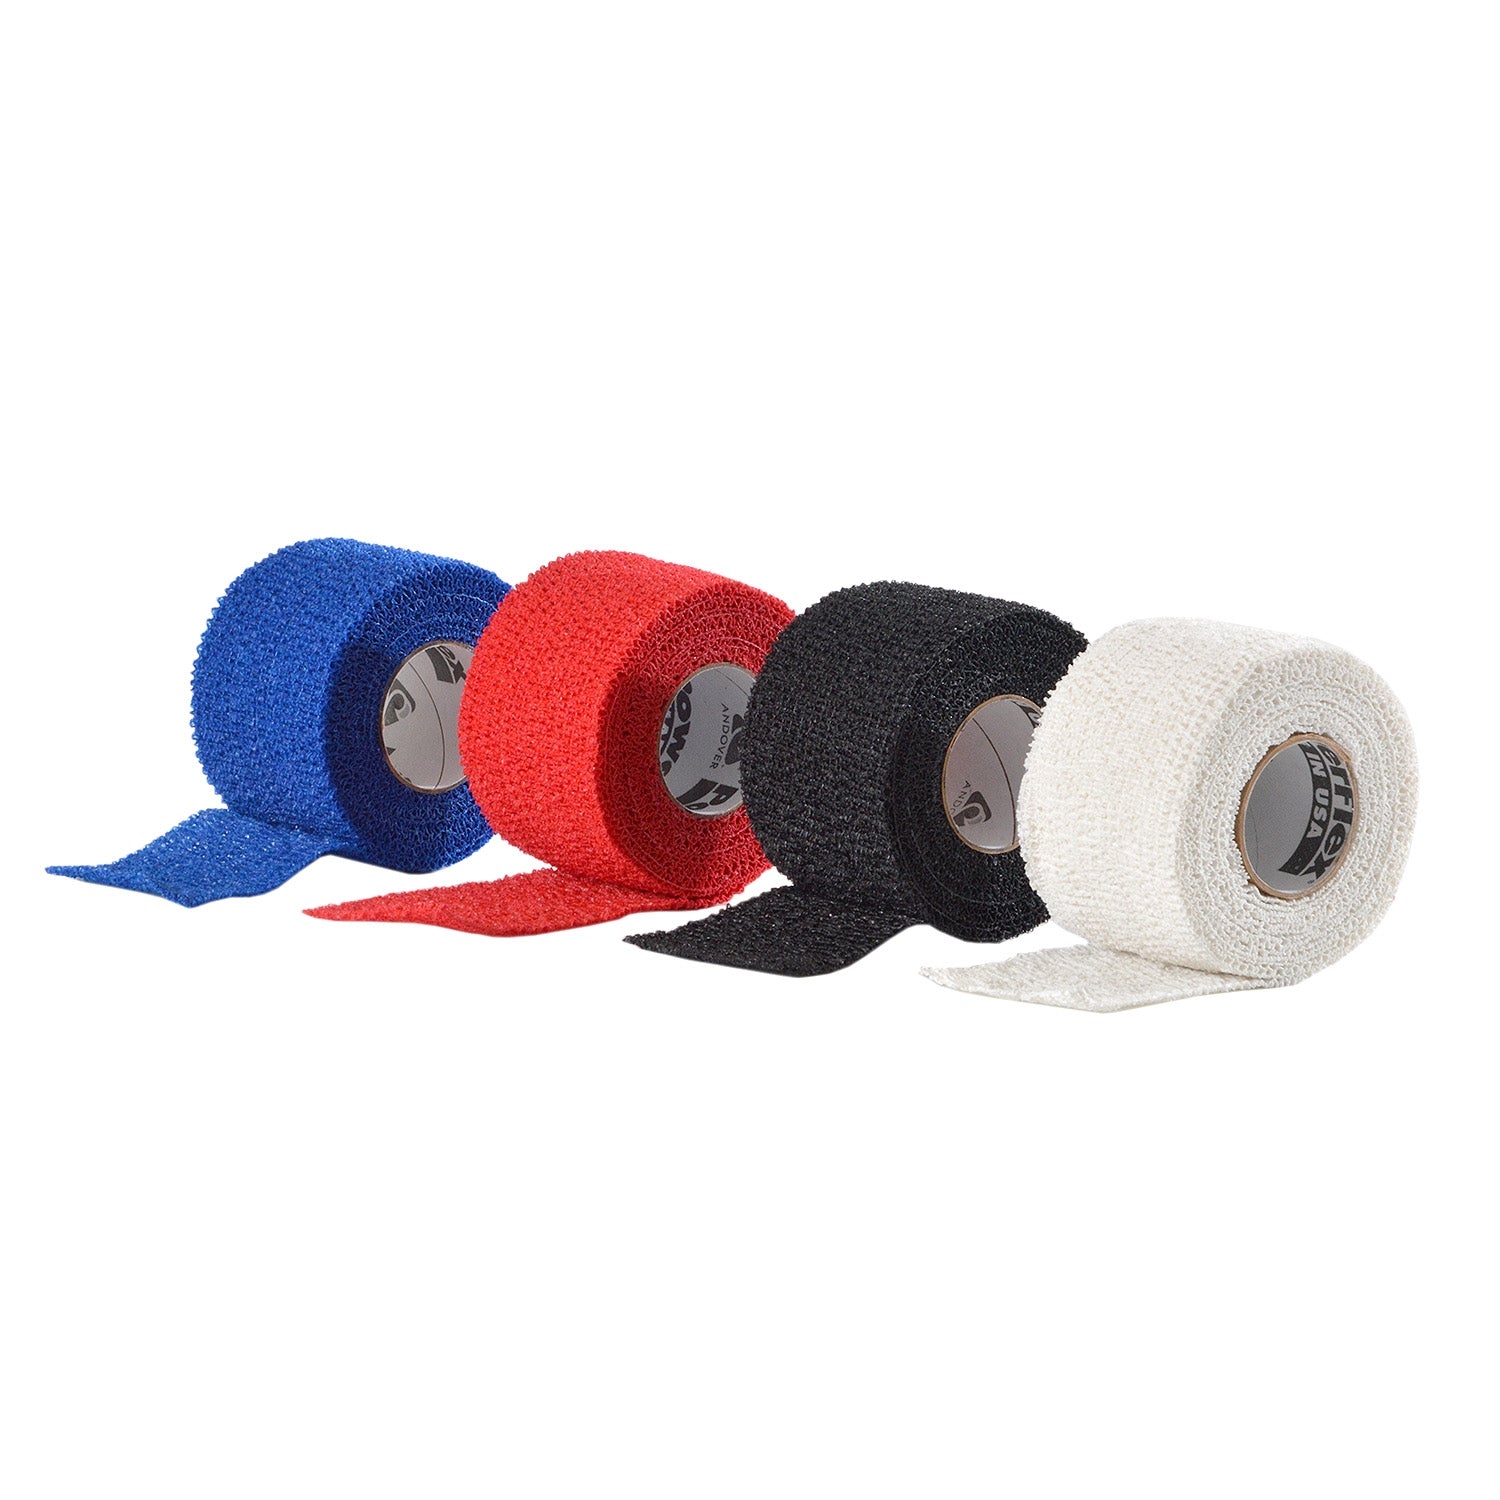 Powerflex Hockey Grip Tape für Eishockeyschläger 38mm